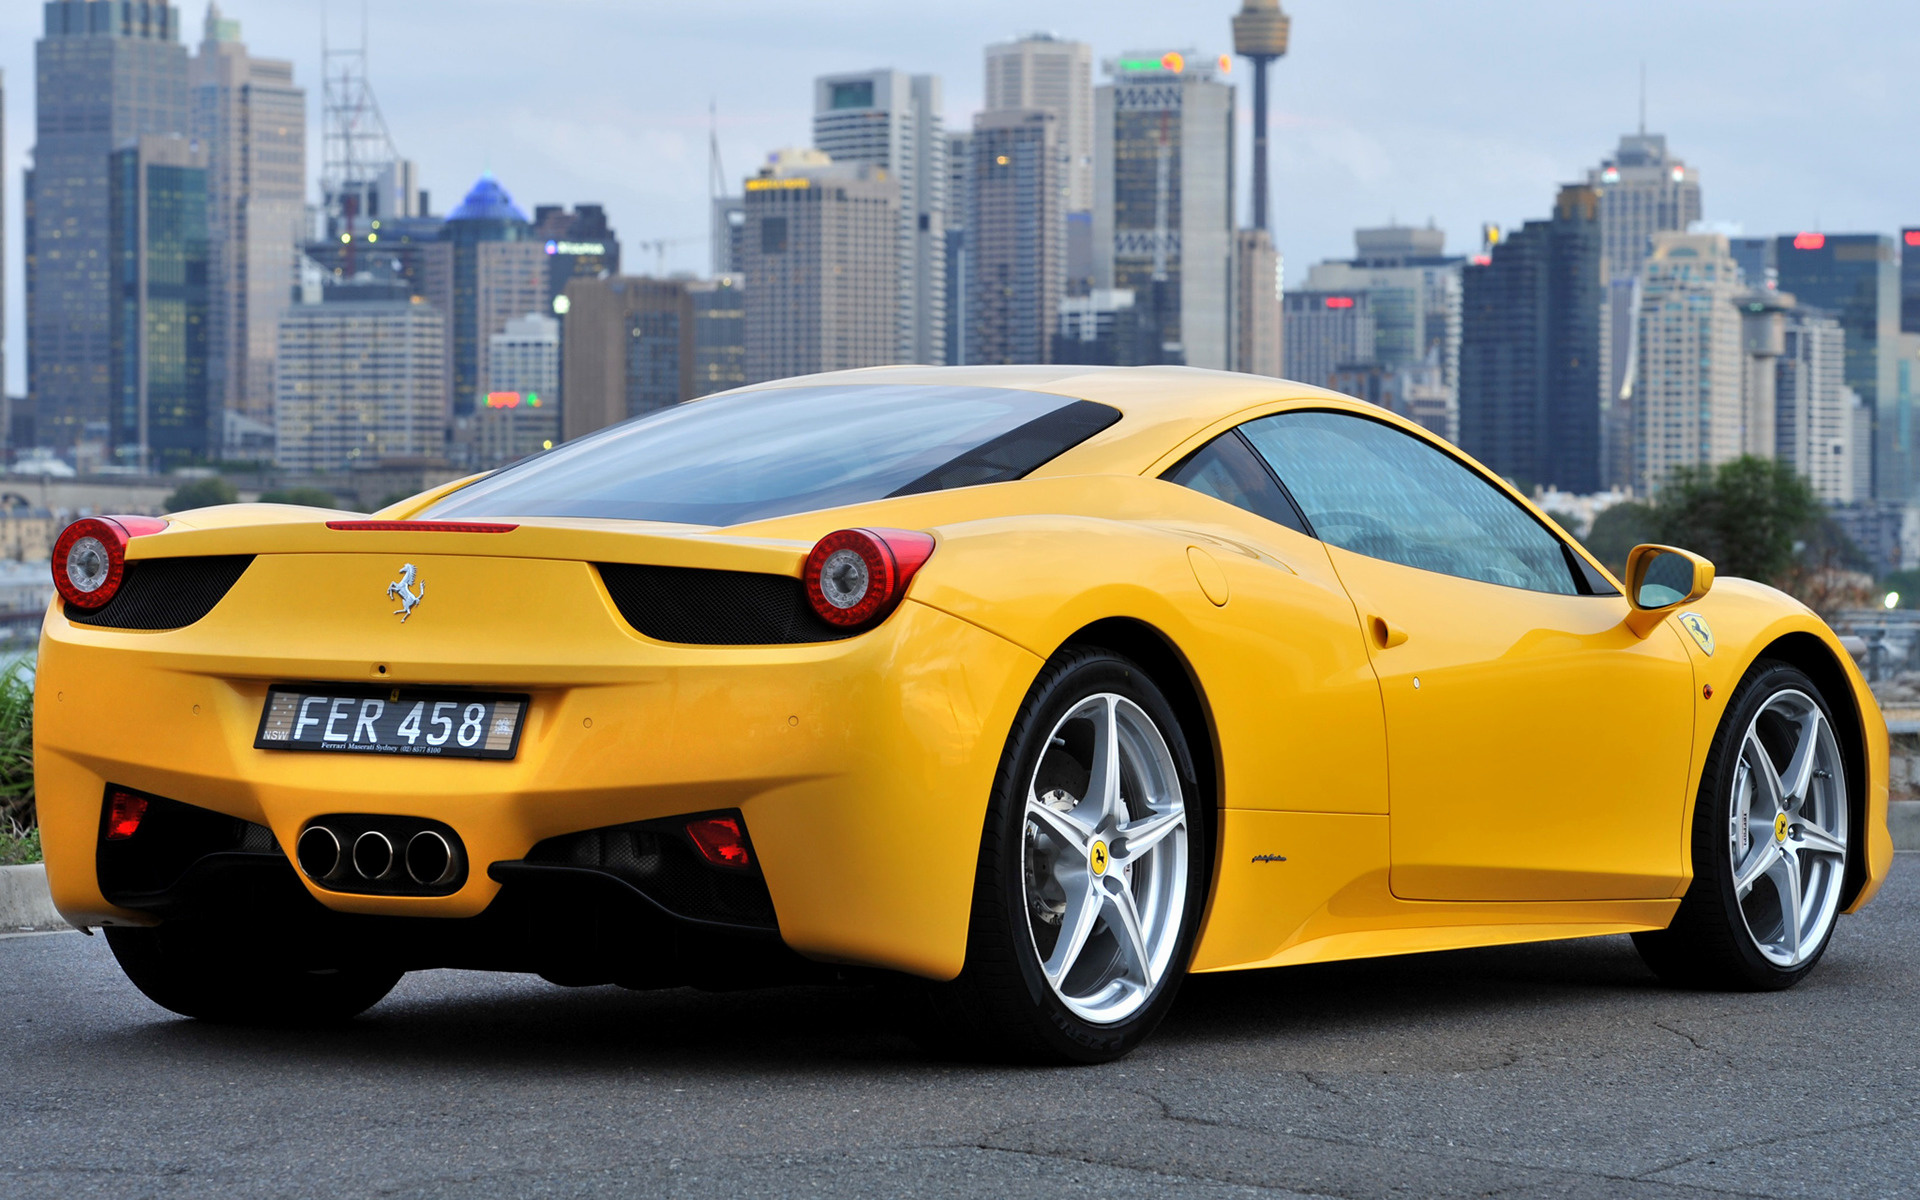 Ferrari отзывает модель 458 italia из-за риска возгорания